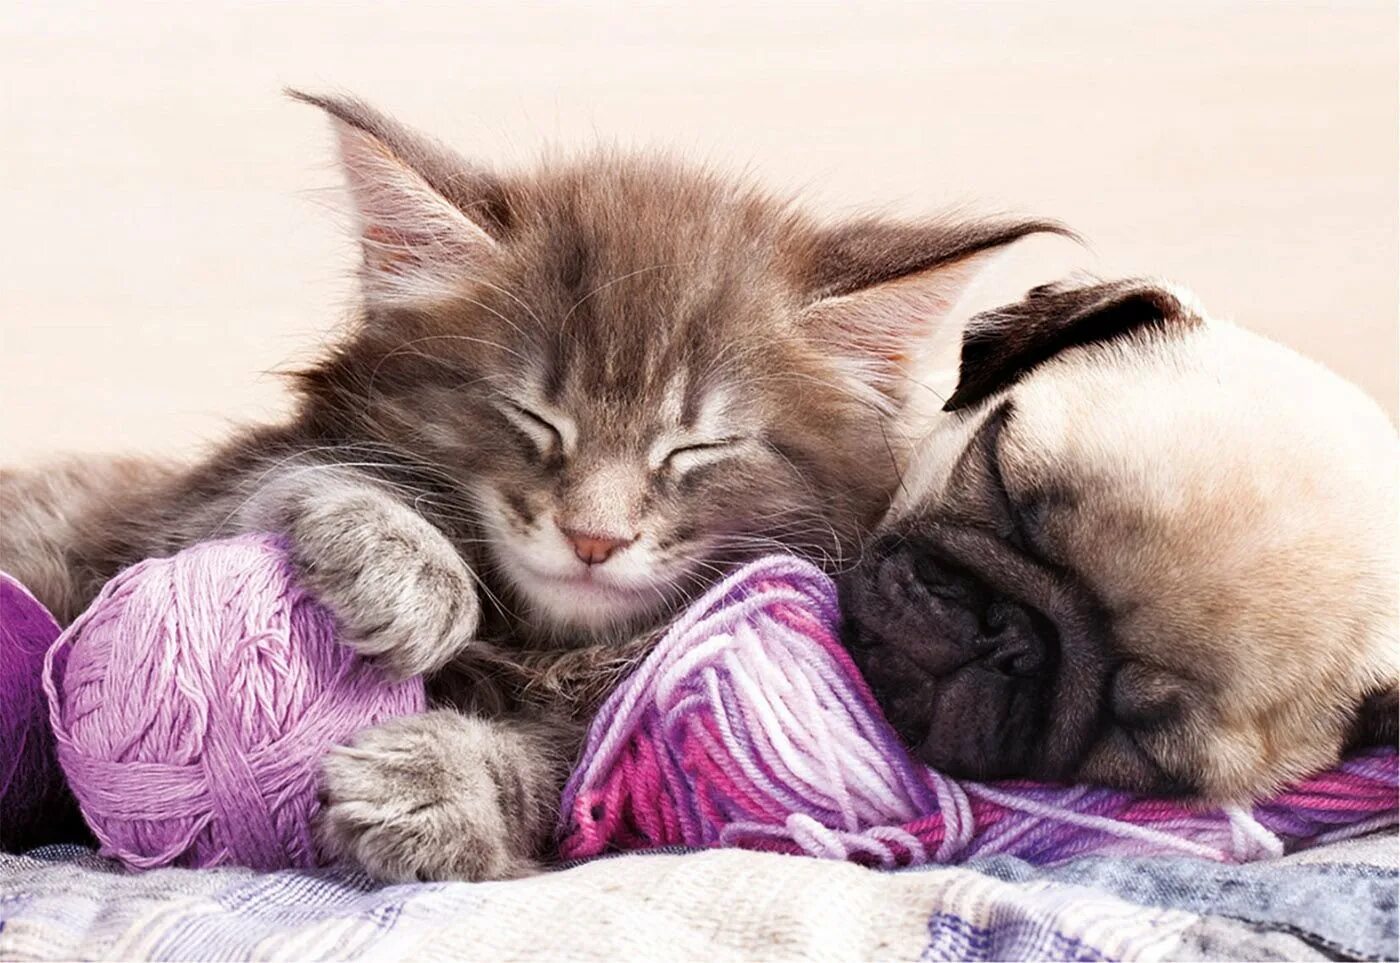 Сладких снов картинки. Котенок. Спокойной ночи!. Спокойной ночи котик. Спокойной ночи животные. Спакоины ночи с котиками.